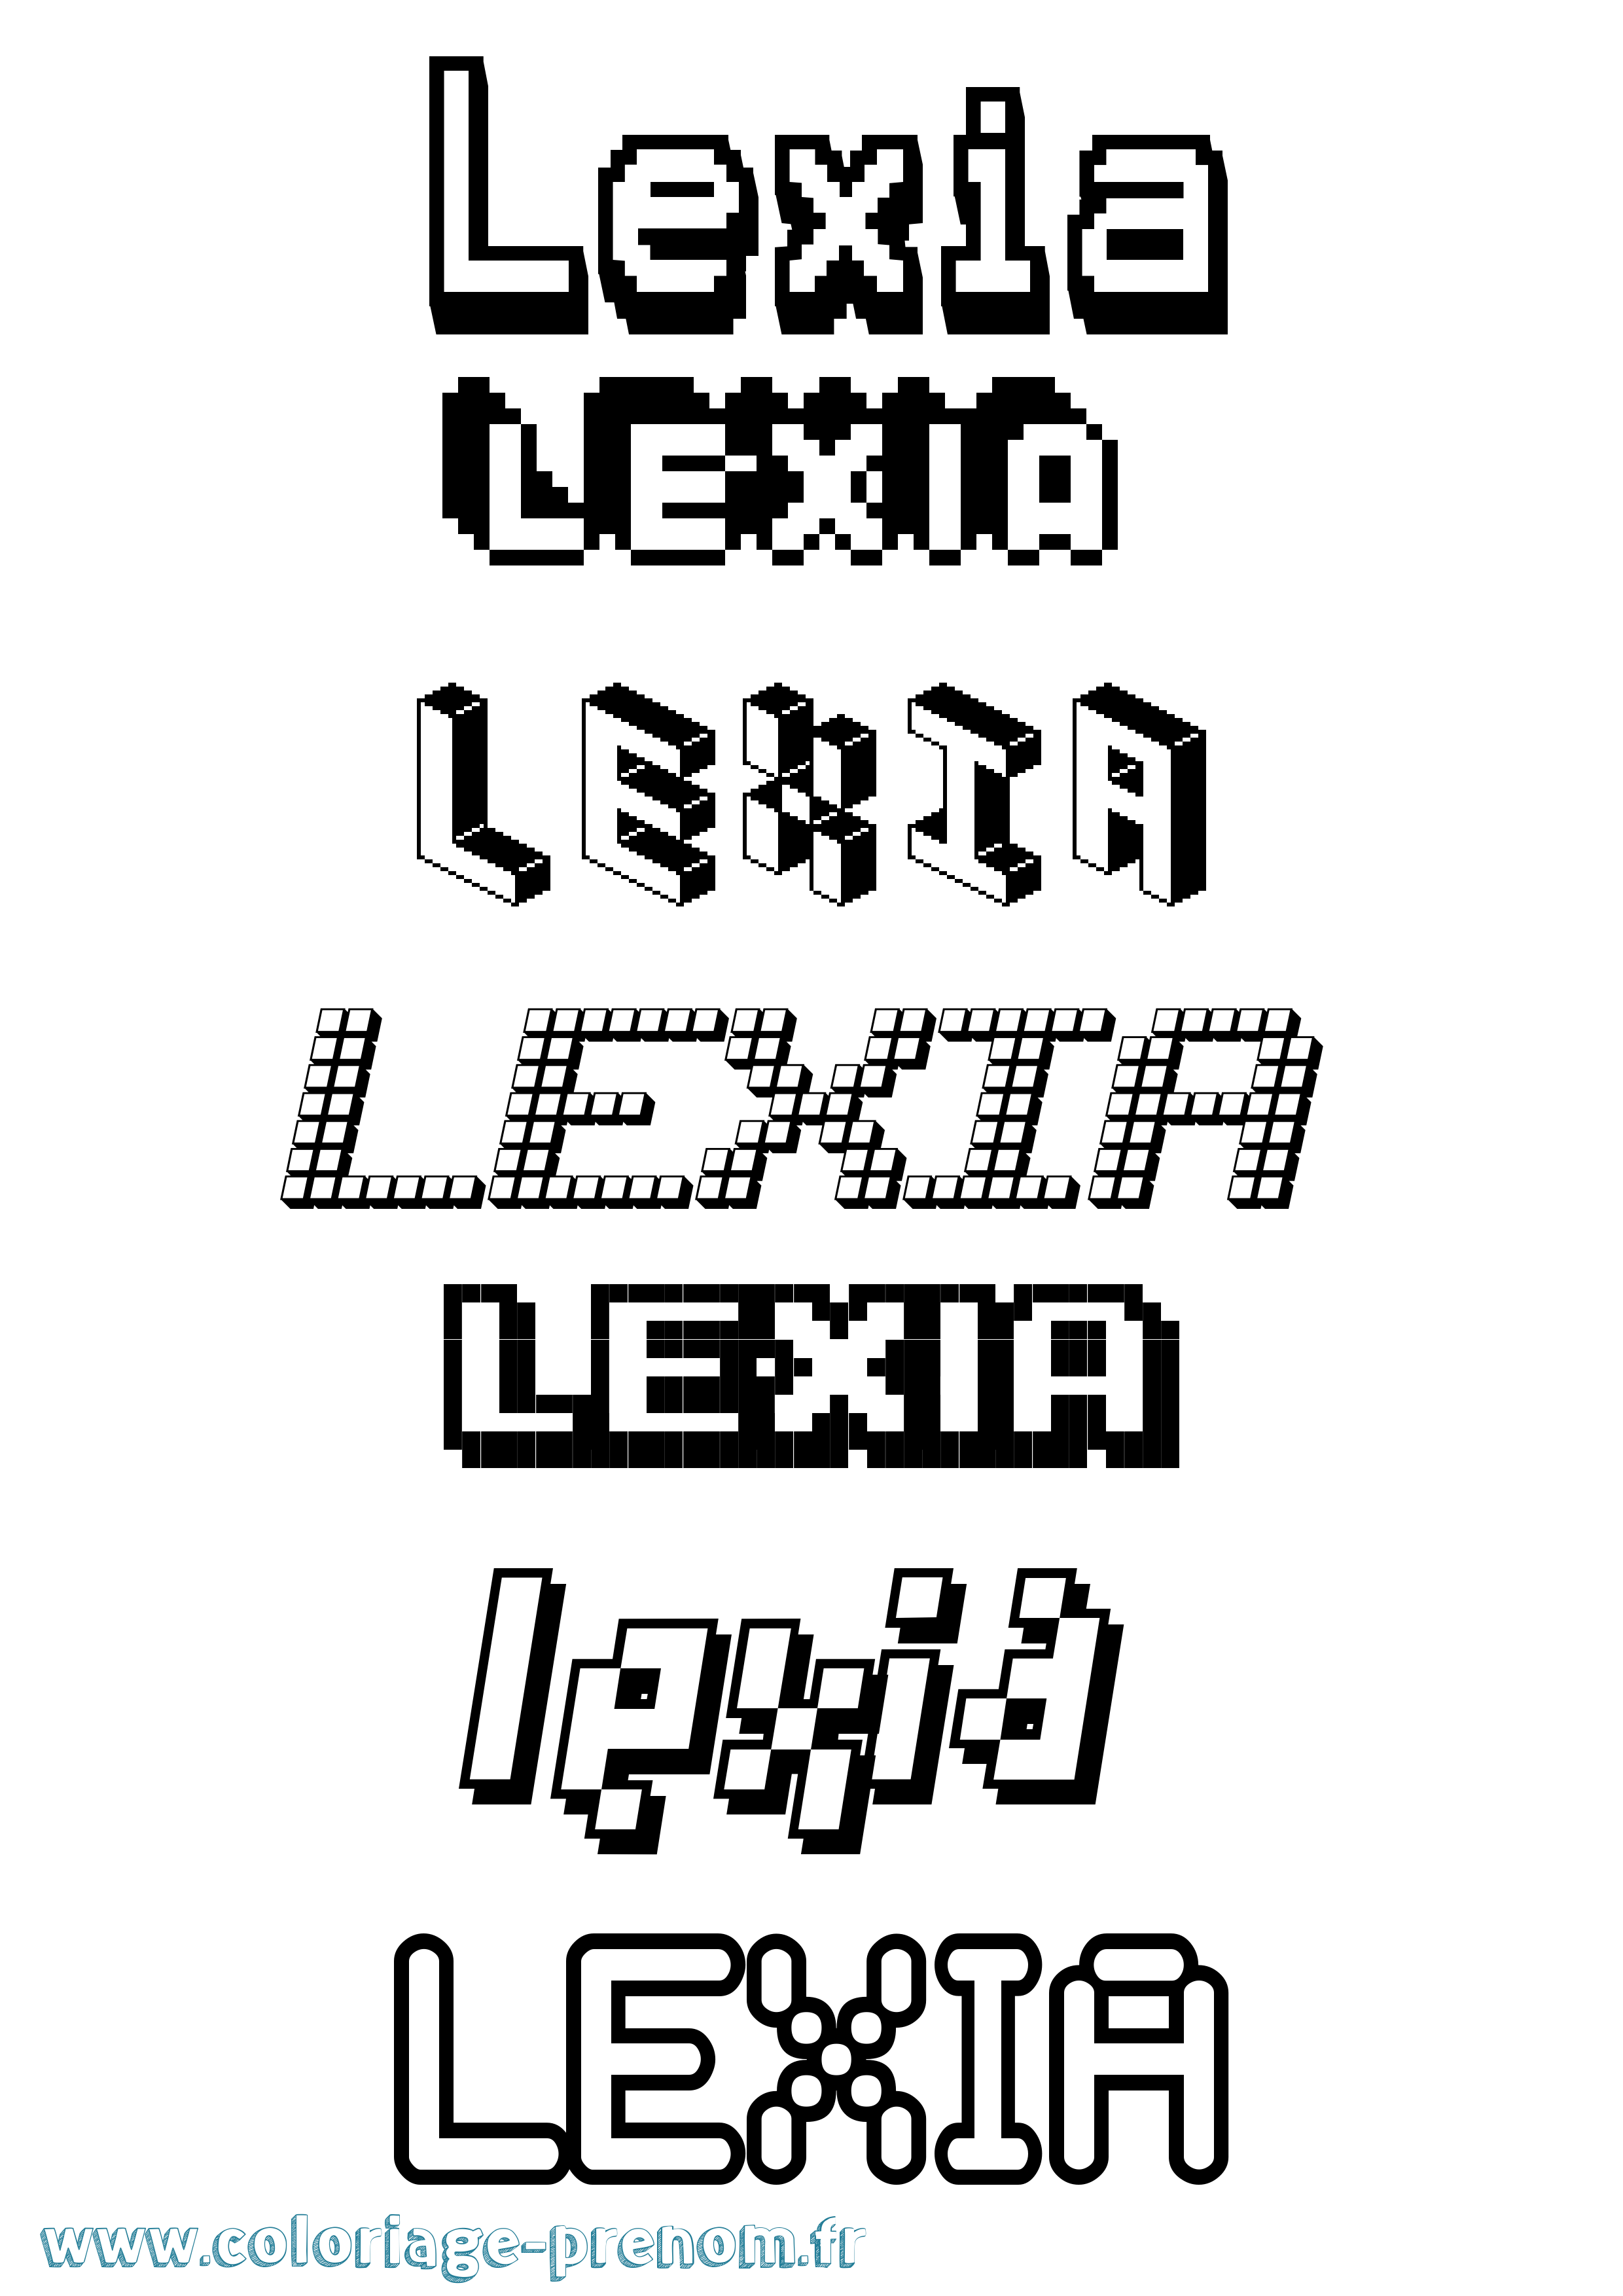 Coloriage prénom Lexia Pixel